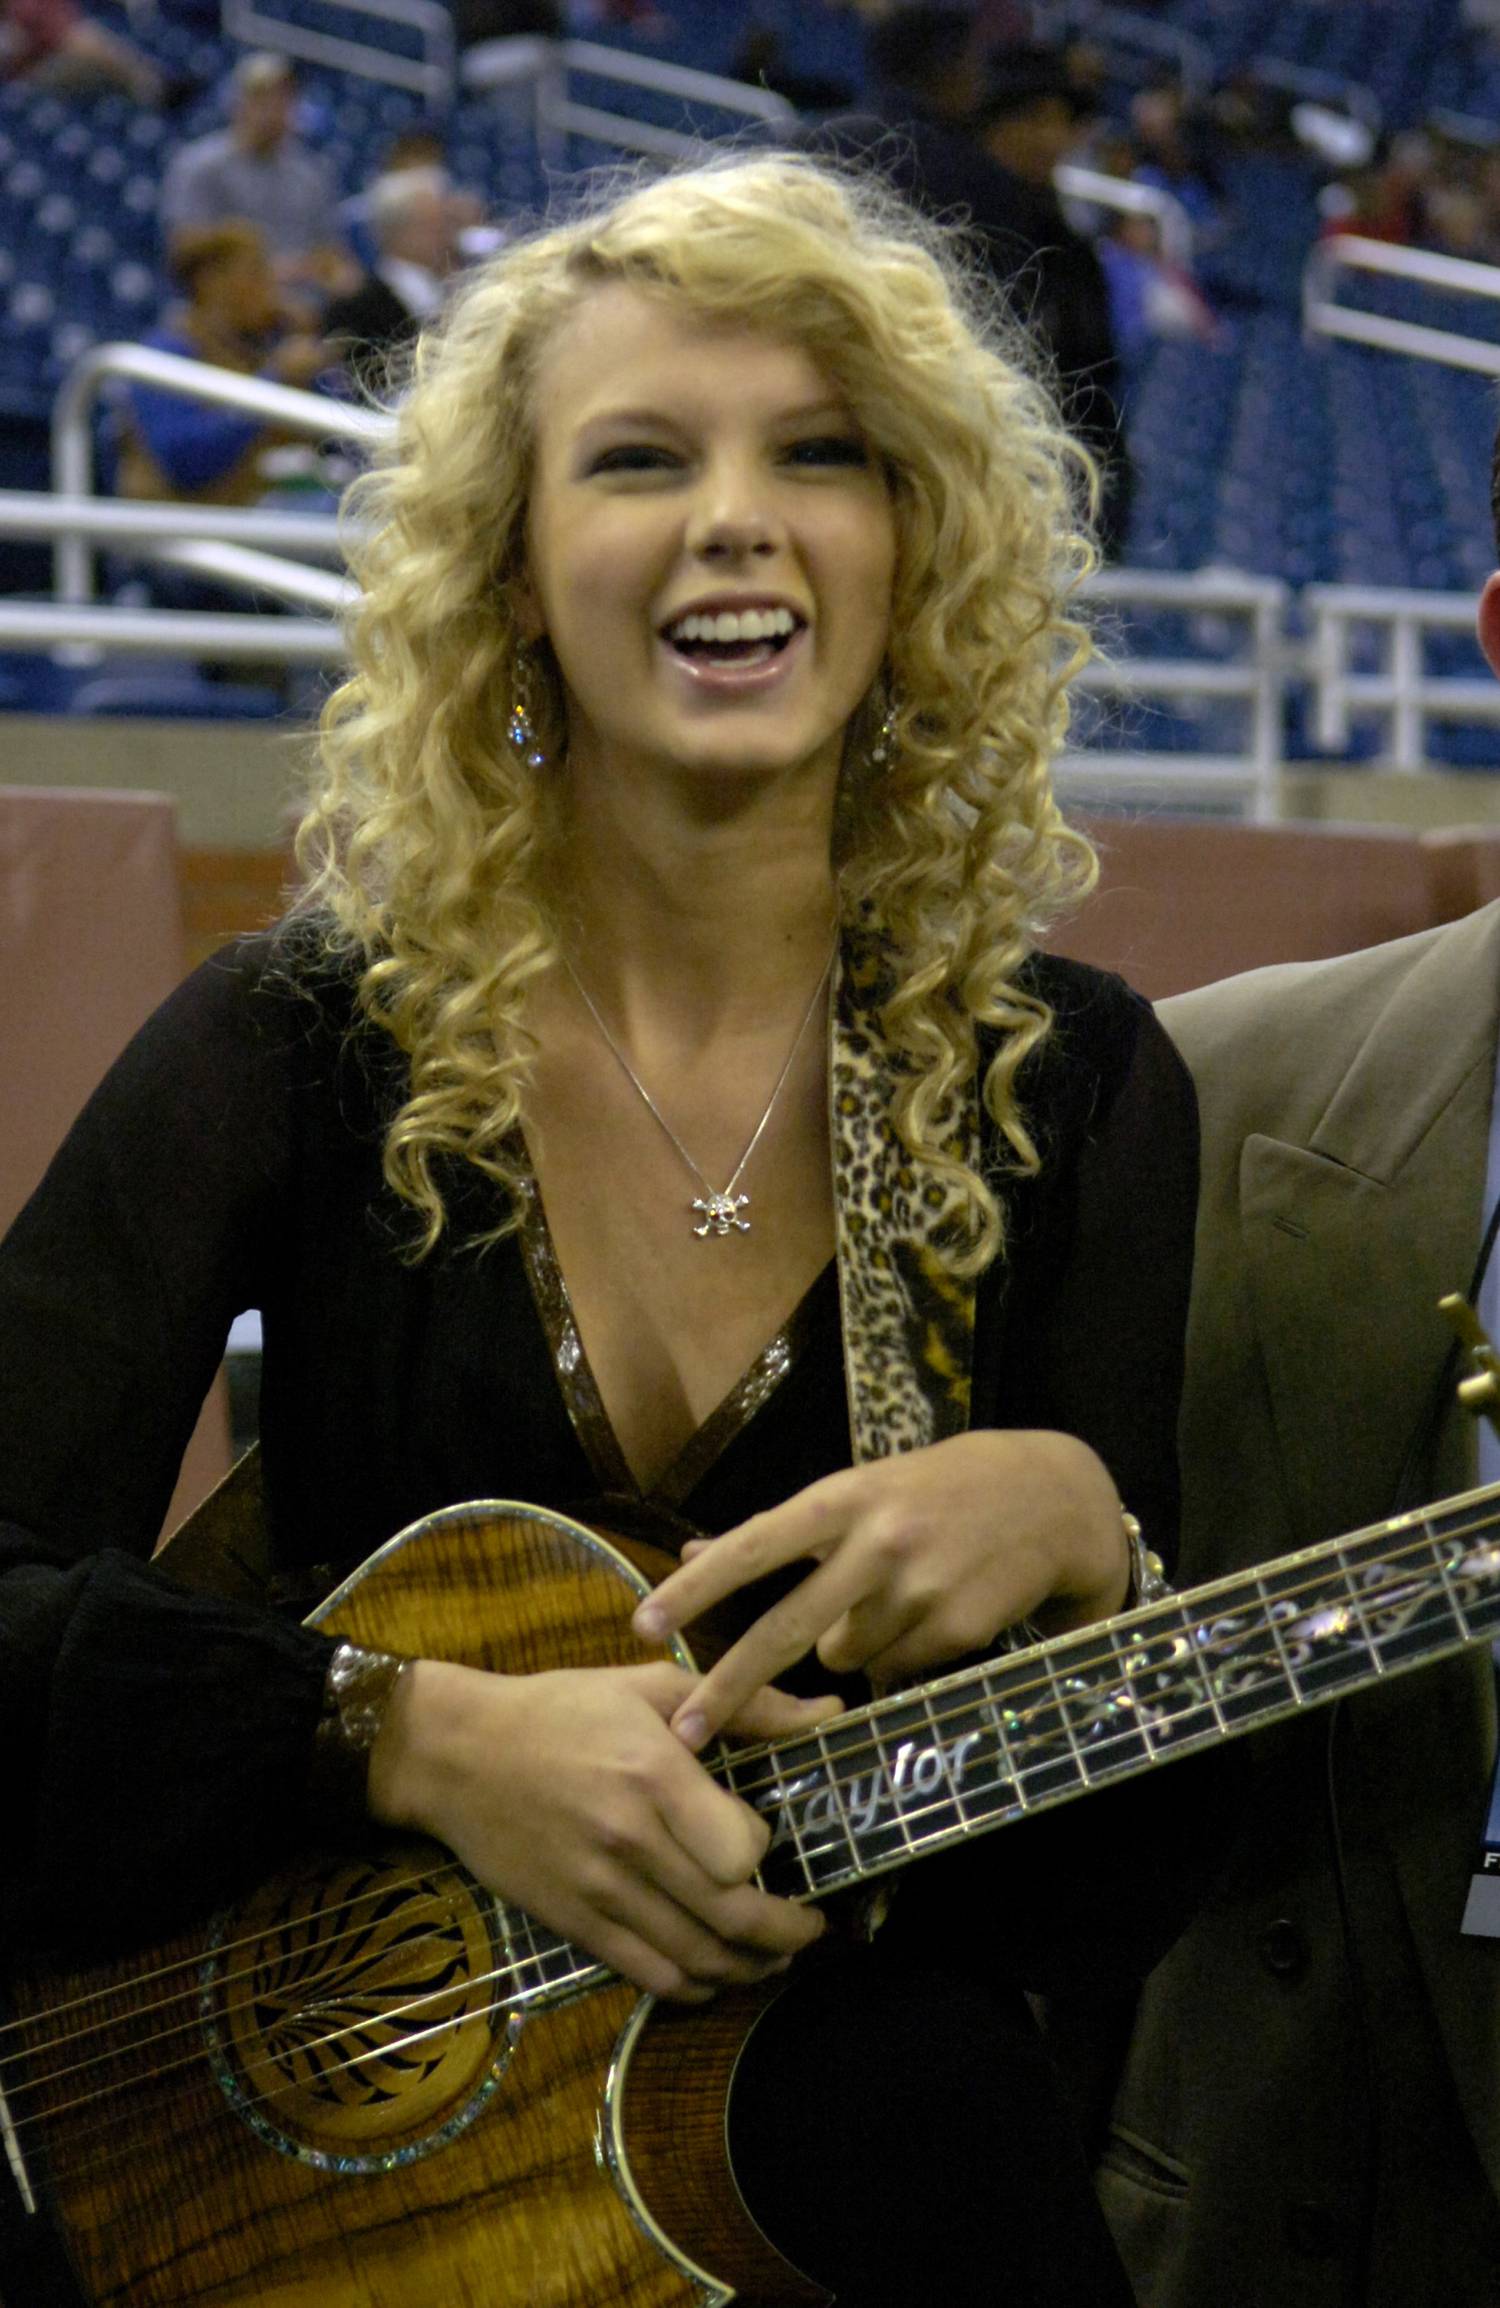 Taylor Swift 2006-ban, ebben az évben jelent meg a debütáló albuma.